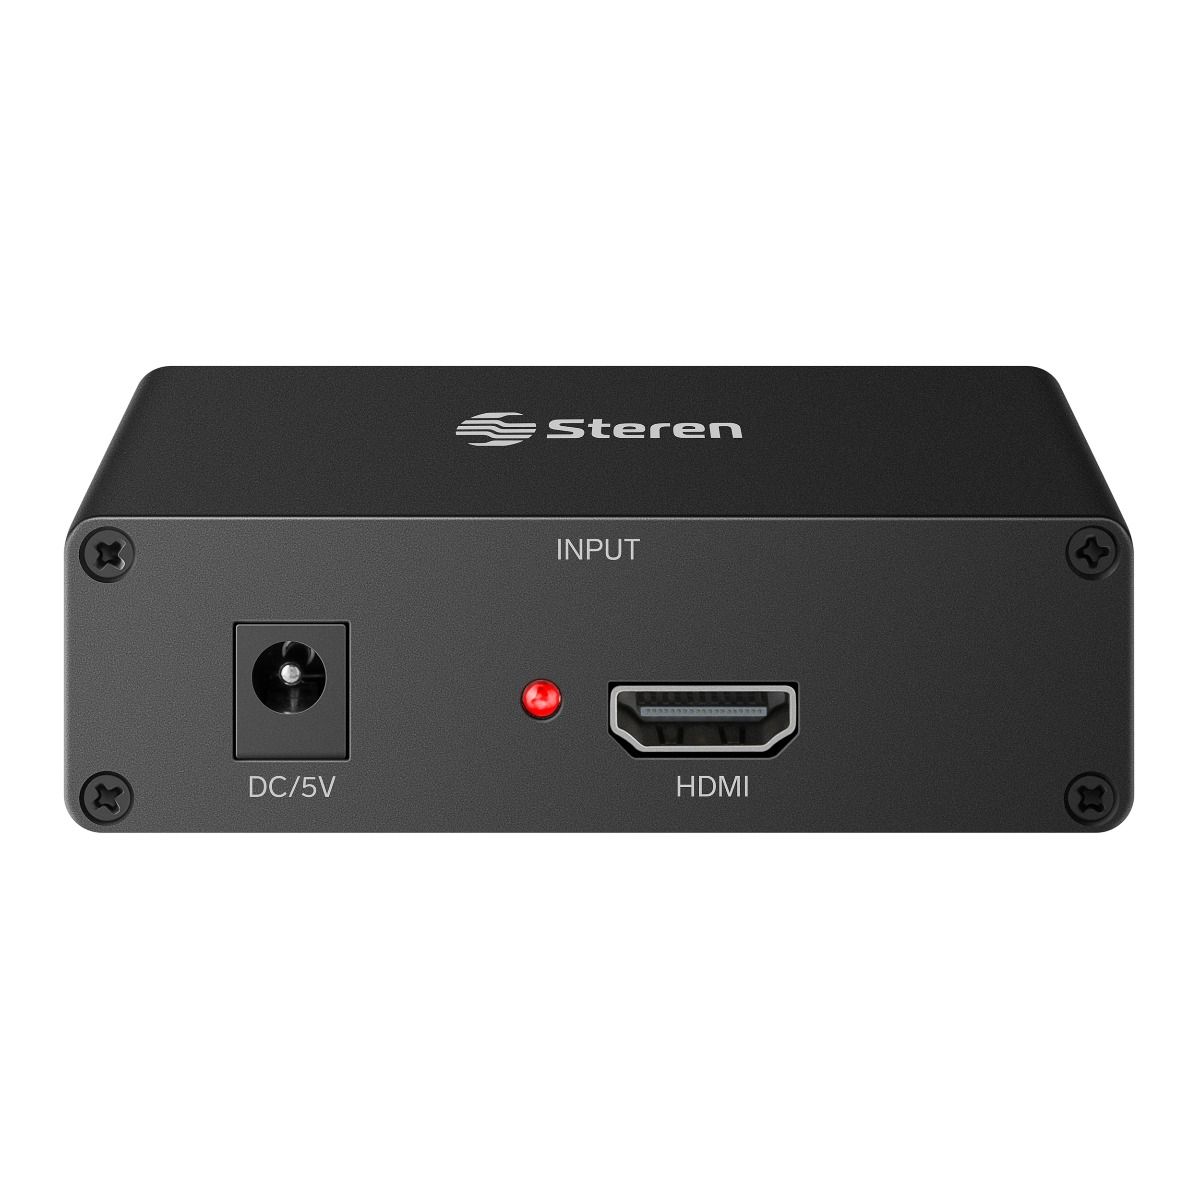 Adaptador HDMI a VGA Steren 506-413 con Audio